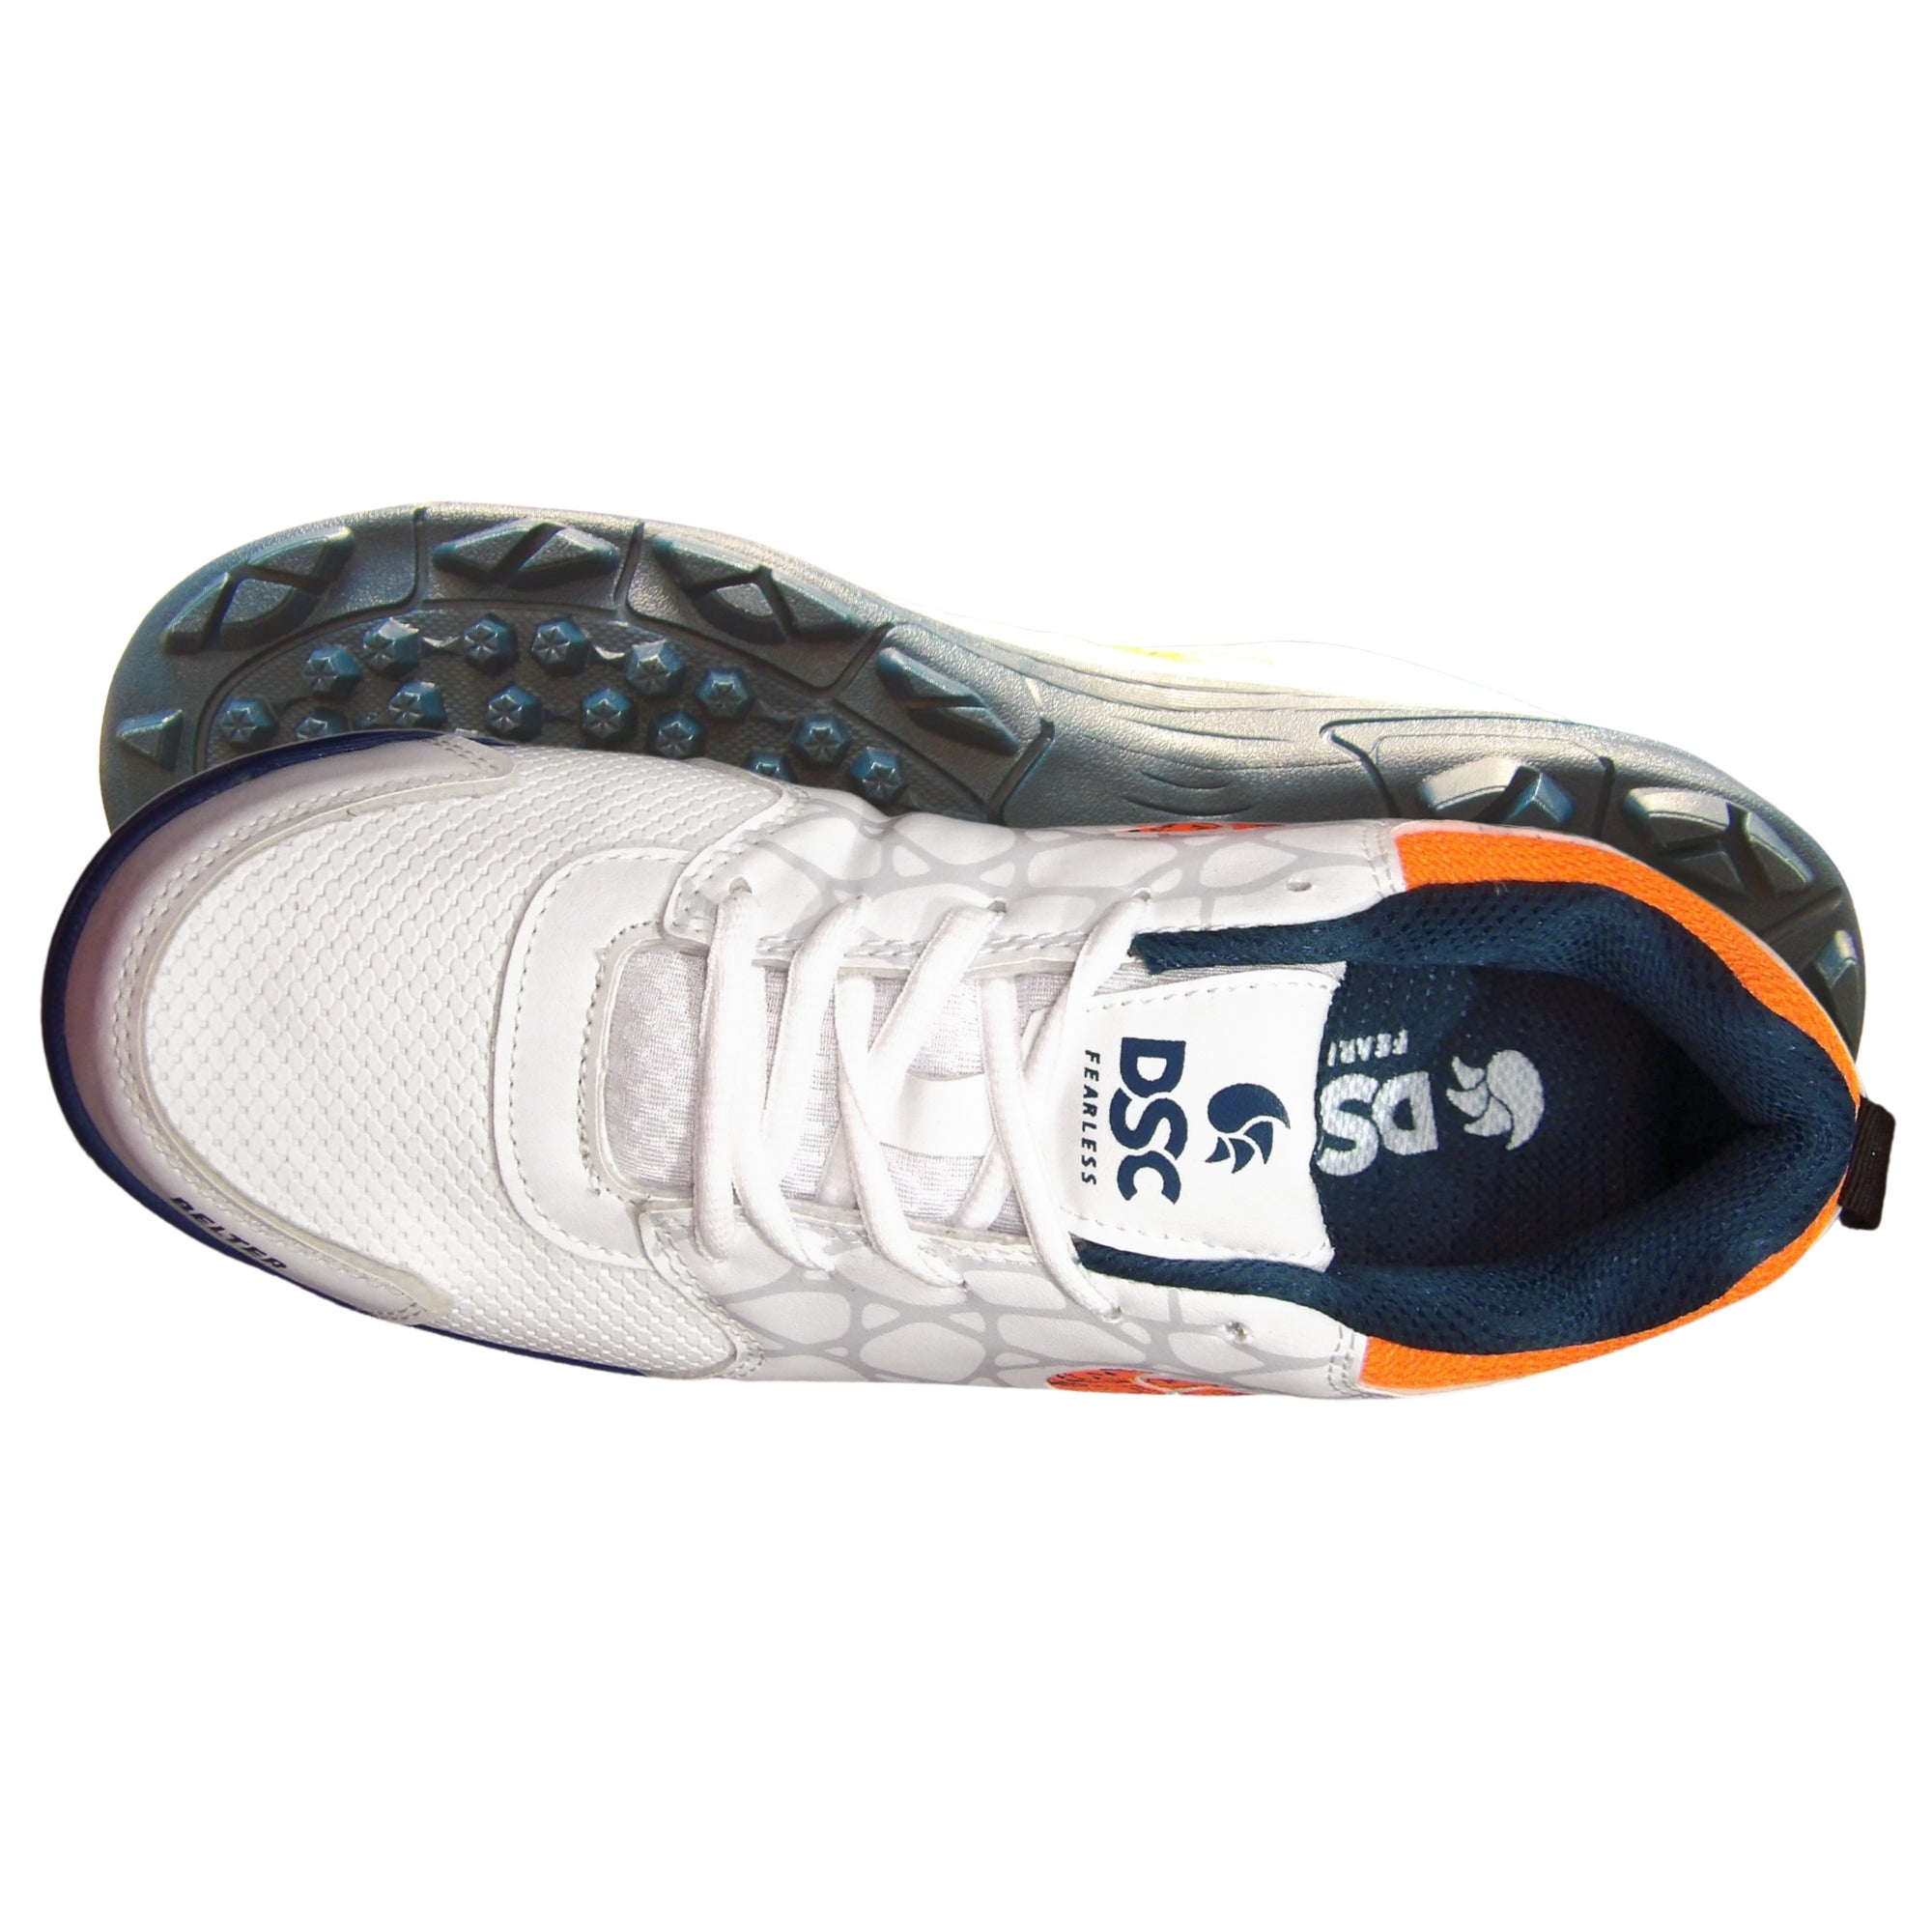 DSC Cricket Shoes, Model Belter - Teal Blue/White